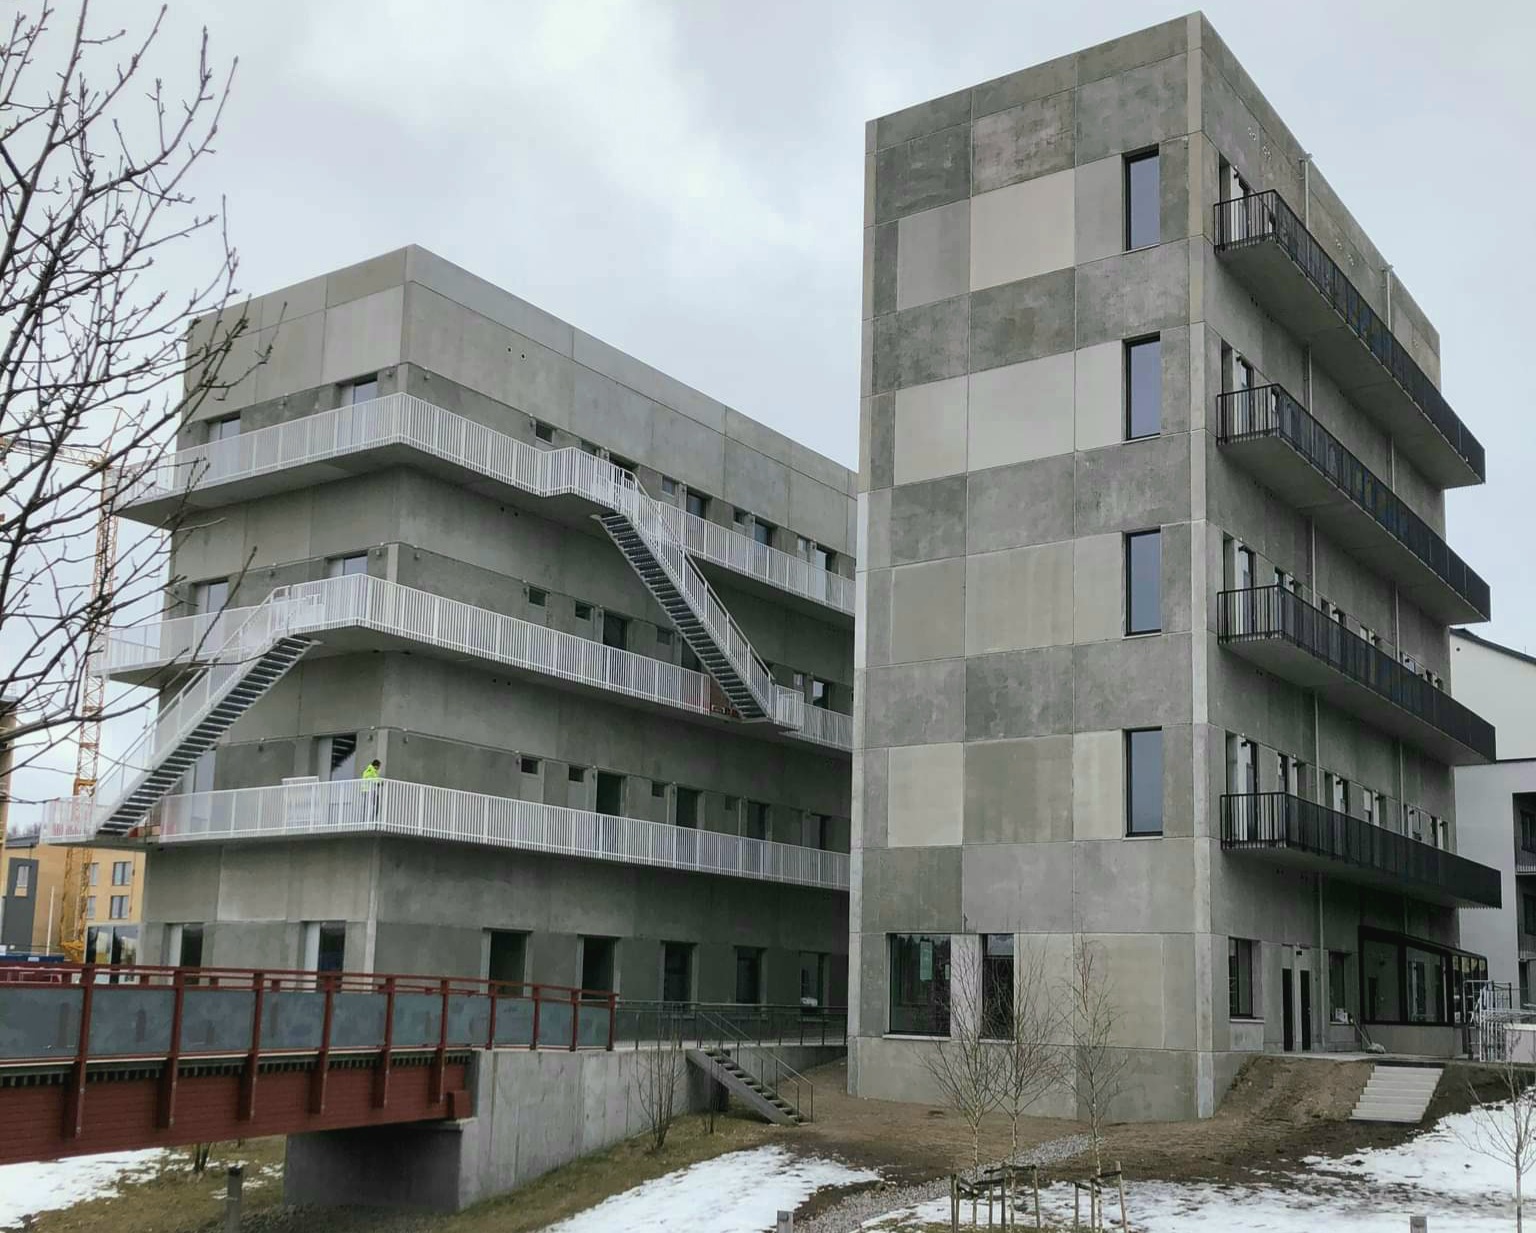 Vallastadens nya gråa bostadshus i Linköping är Sveriges fulaste nybygge 2022!